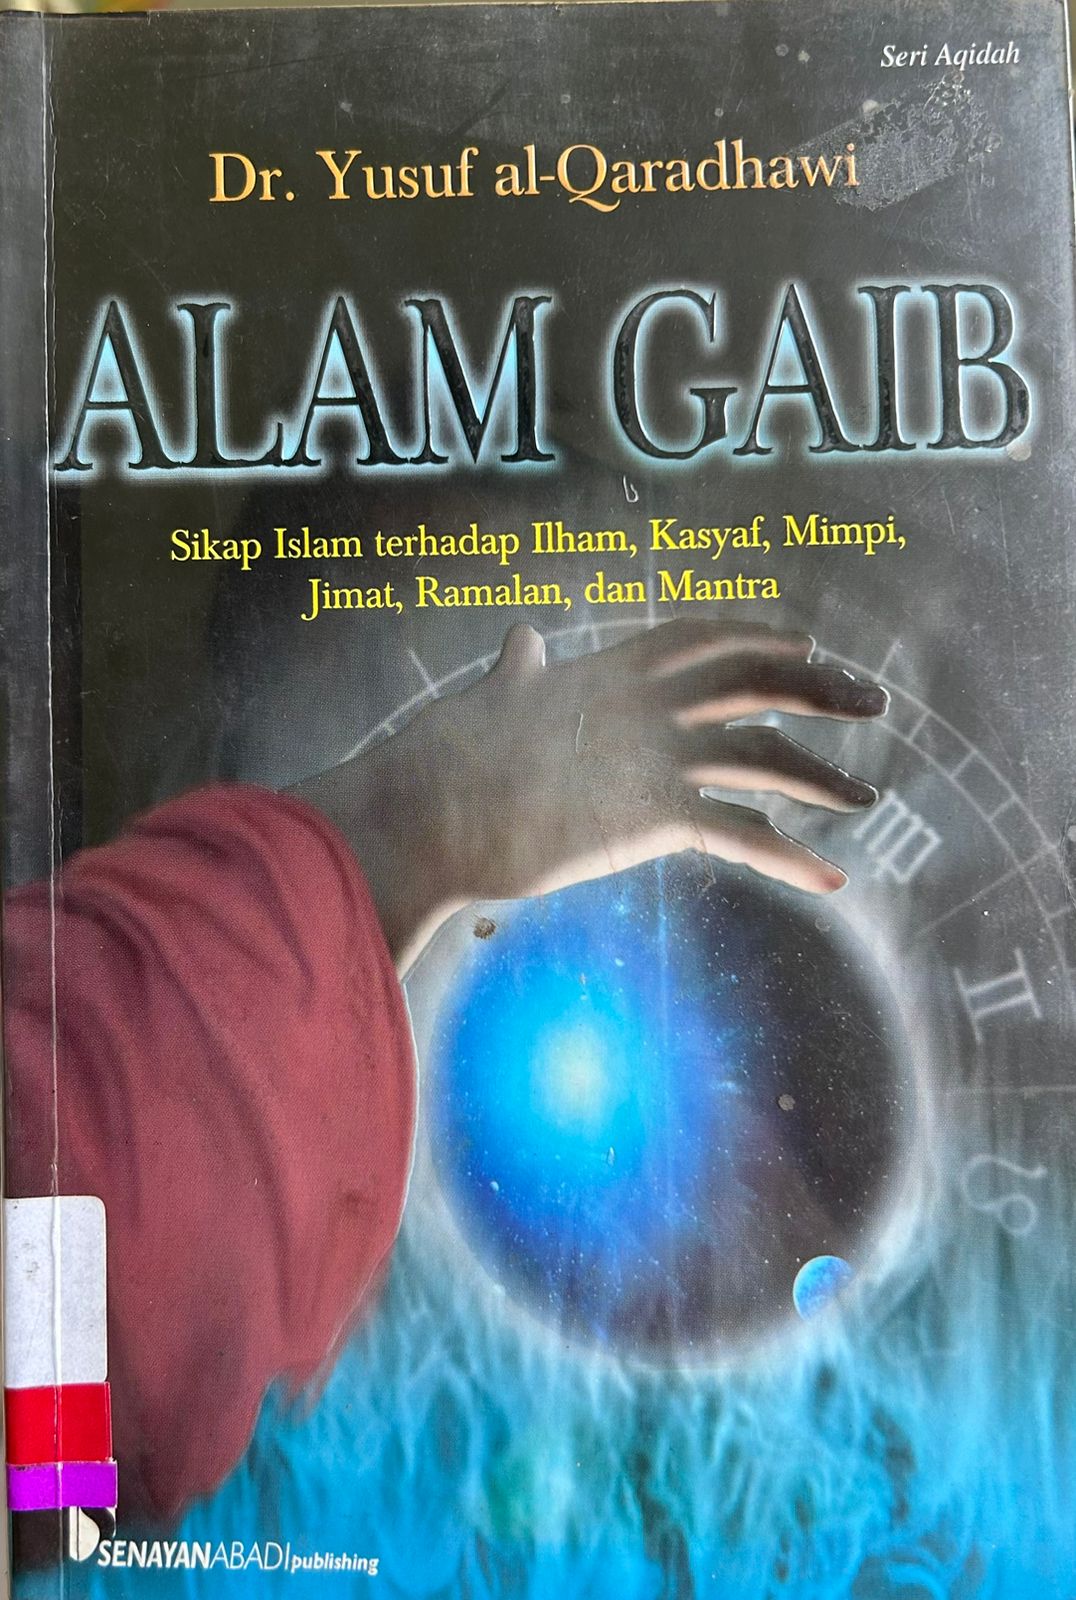 Alam Gaib :  Sikap Islam terhadap ilham, kasyaf, mimpi, jimat, ramalan, dan mantra